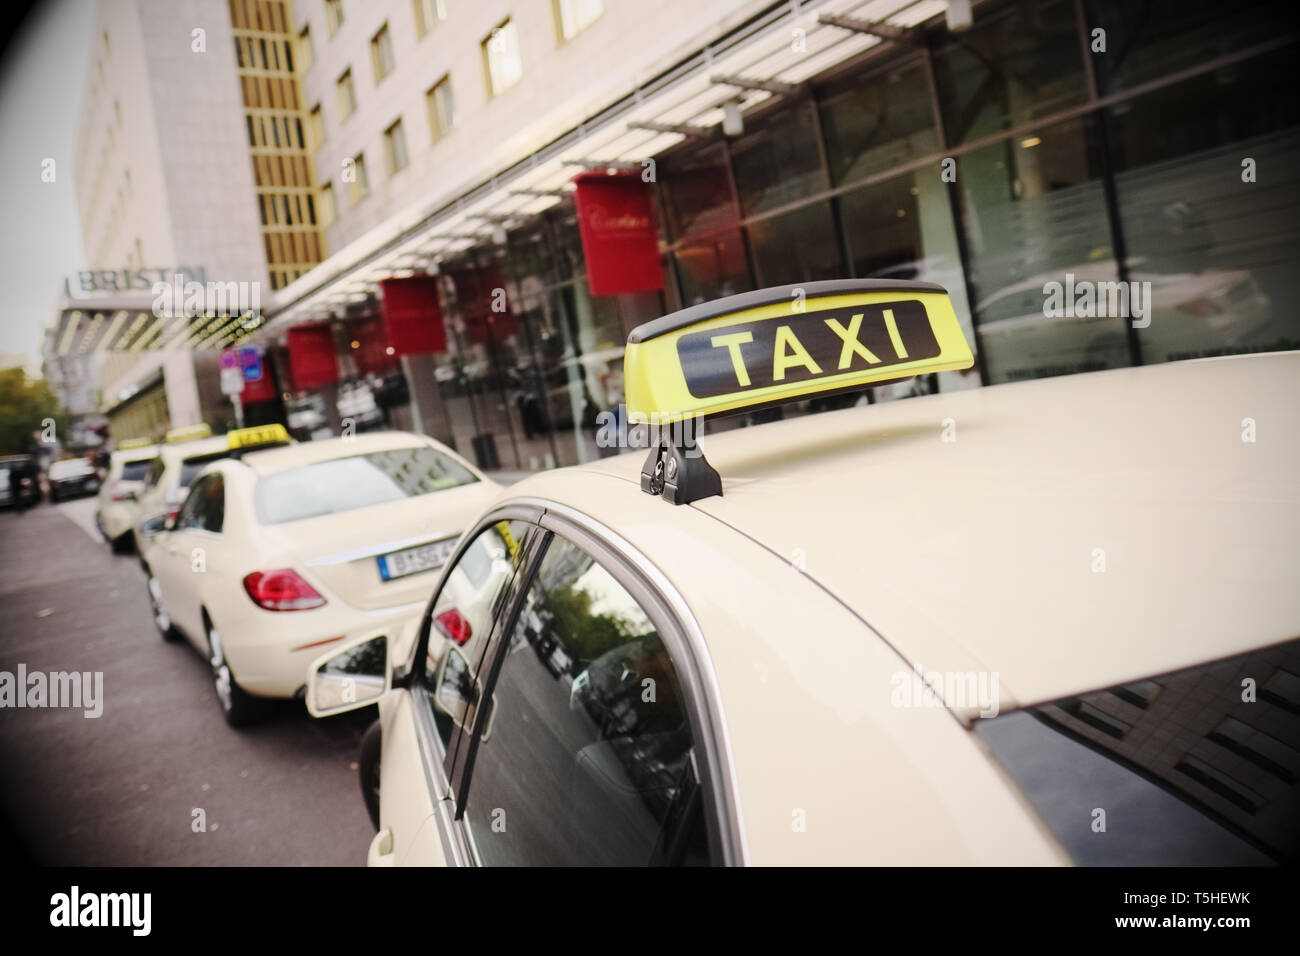 Taxi-Schild, Berlin, Deutschland Stock Photo - Alamy